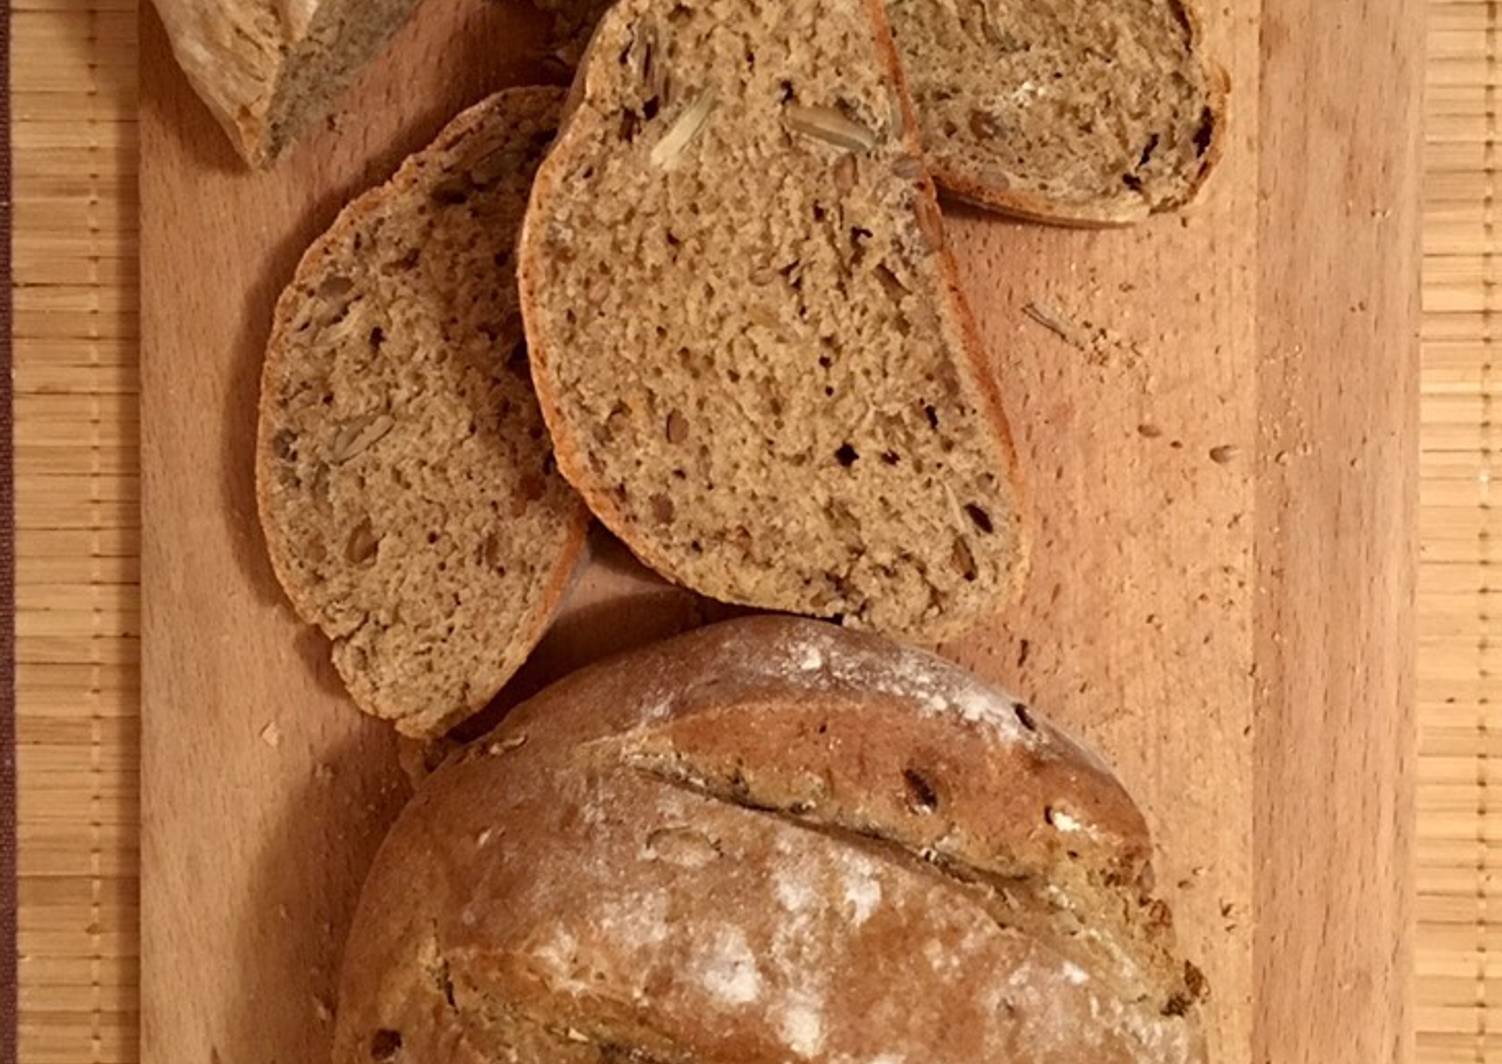 Цельнозерновой хлеб рецепт без дрожжей в духовке. Ржаной хлеб. Бездрожжевой хлеб на кефире. Кефир и ржаной хлеб. Хлеб из цельнощерноаой муки без дроддей.